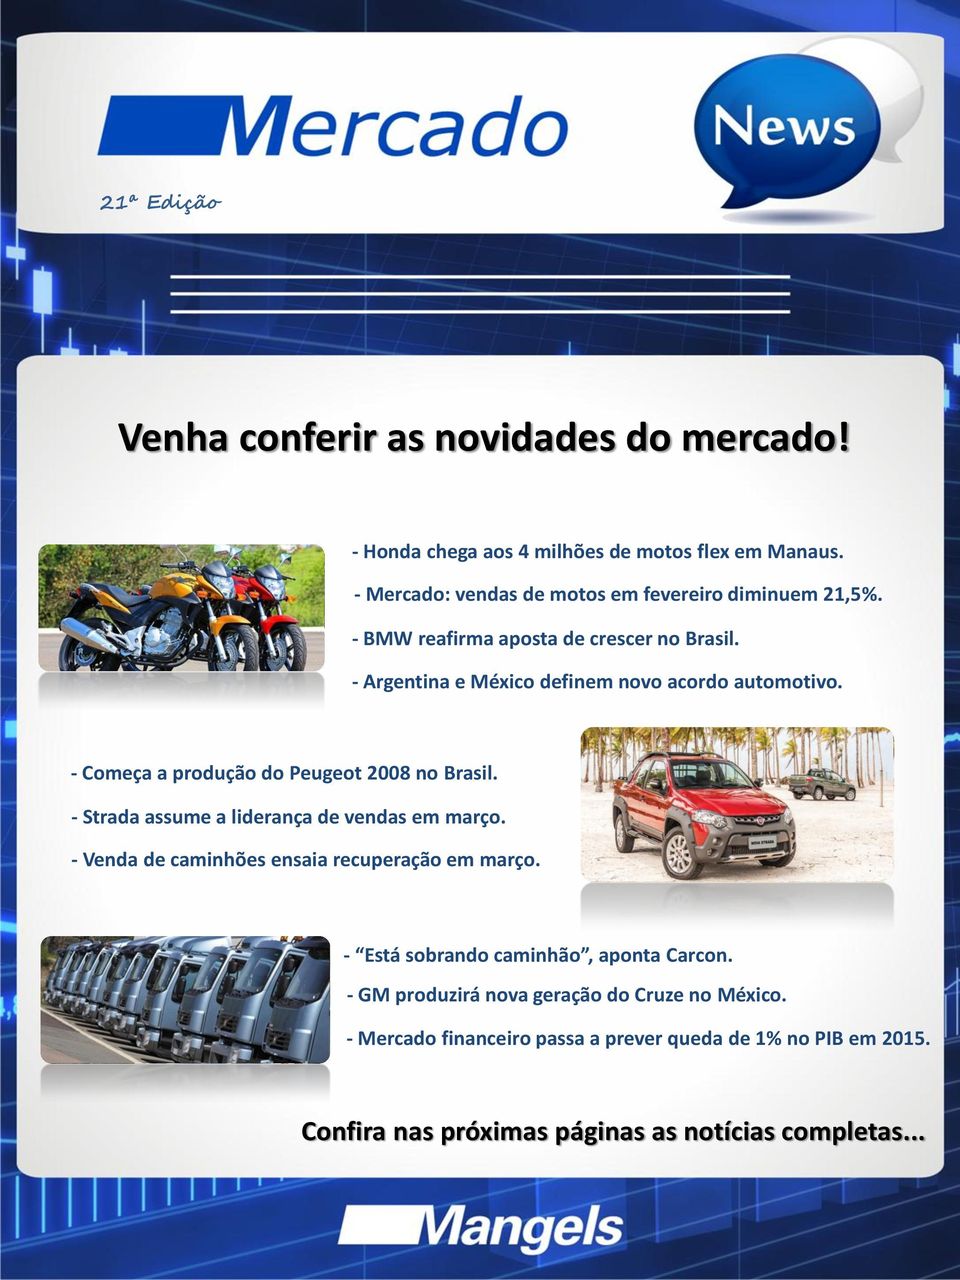 - Começa a produção do Peugeot 2008 no Brasil. - Strada assume a liderança de vendas em março. - Venda de caminhões ensaia recuperação em março.